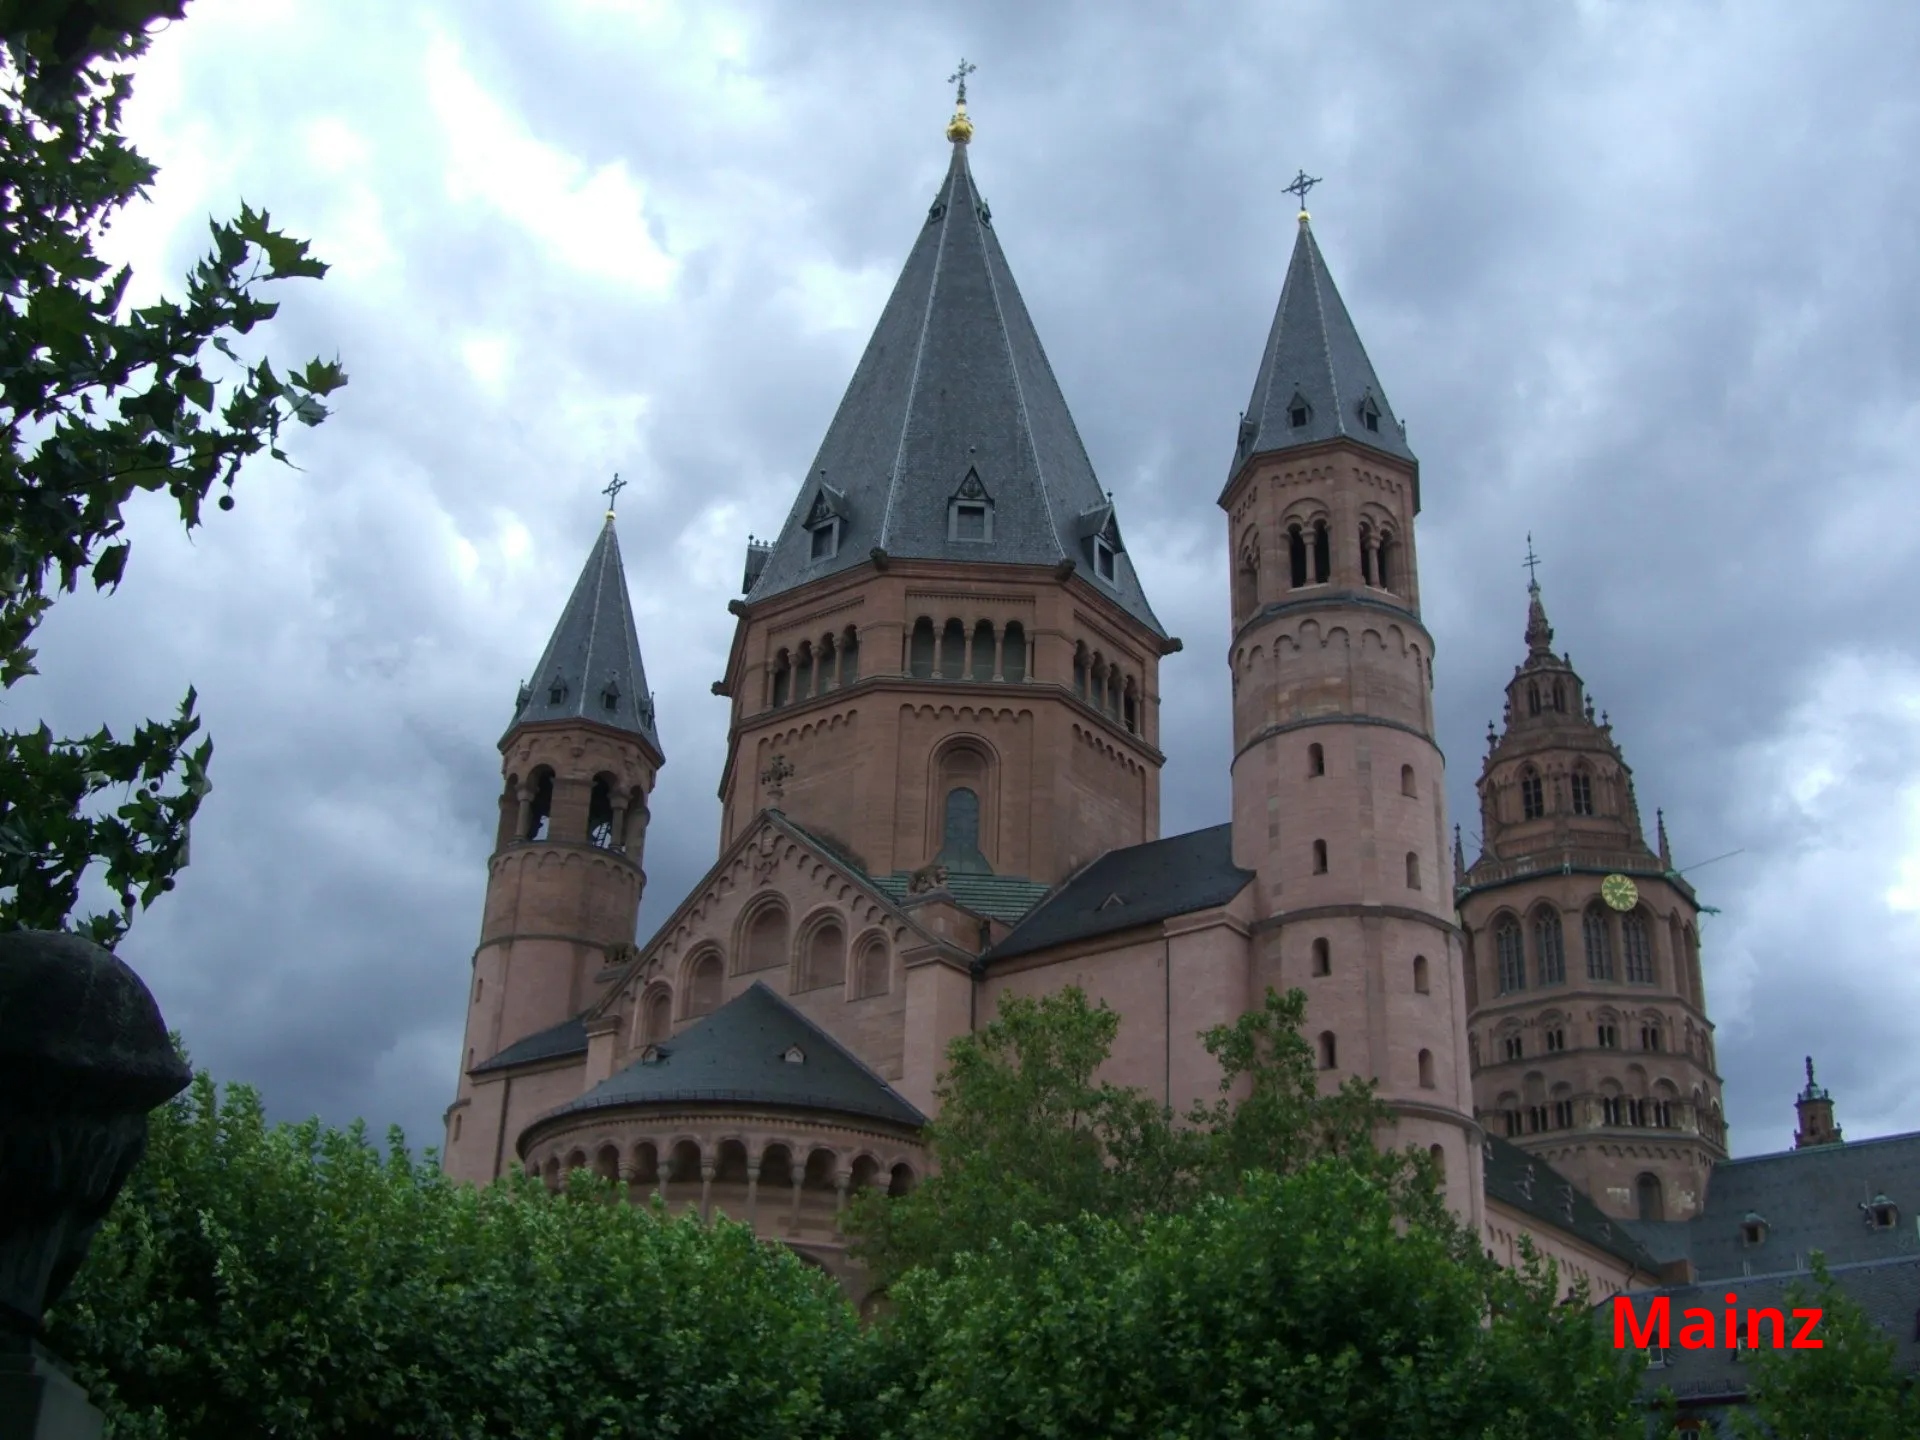 Mainzer Dom